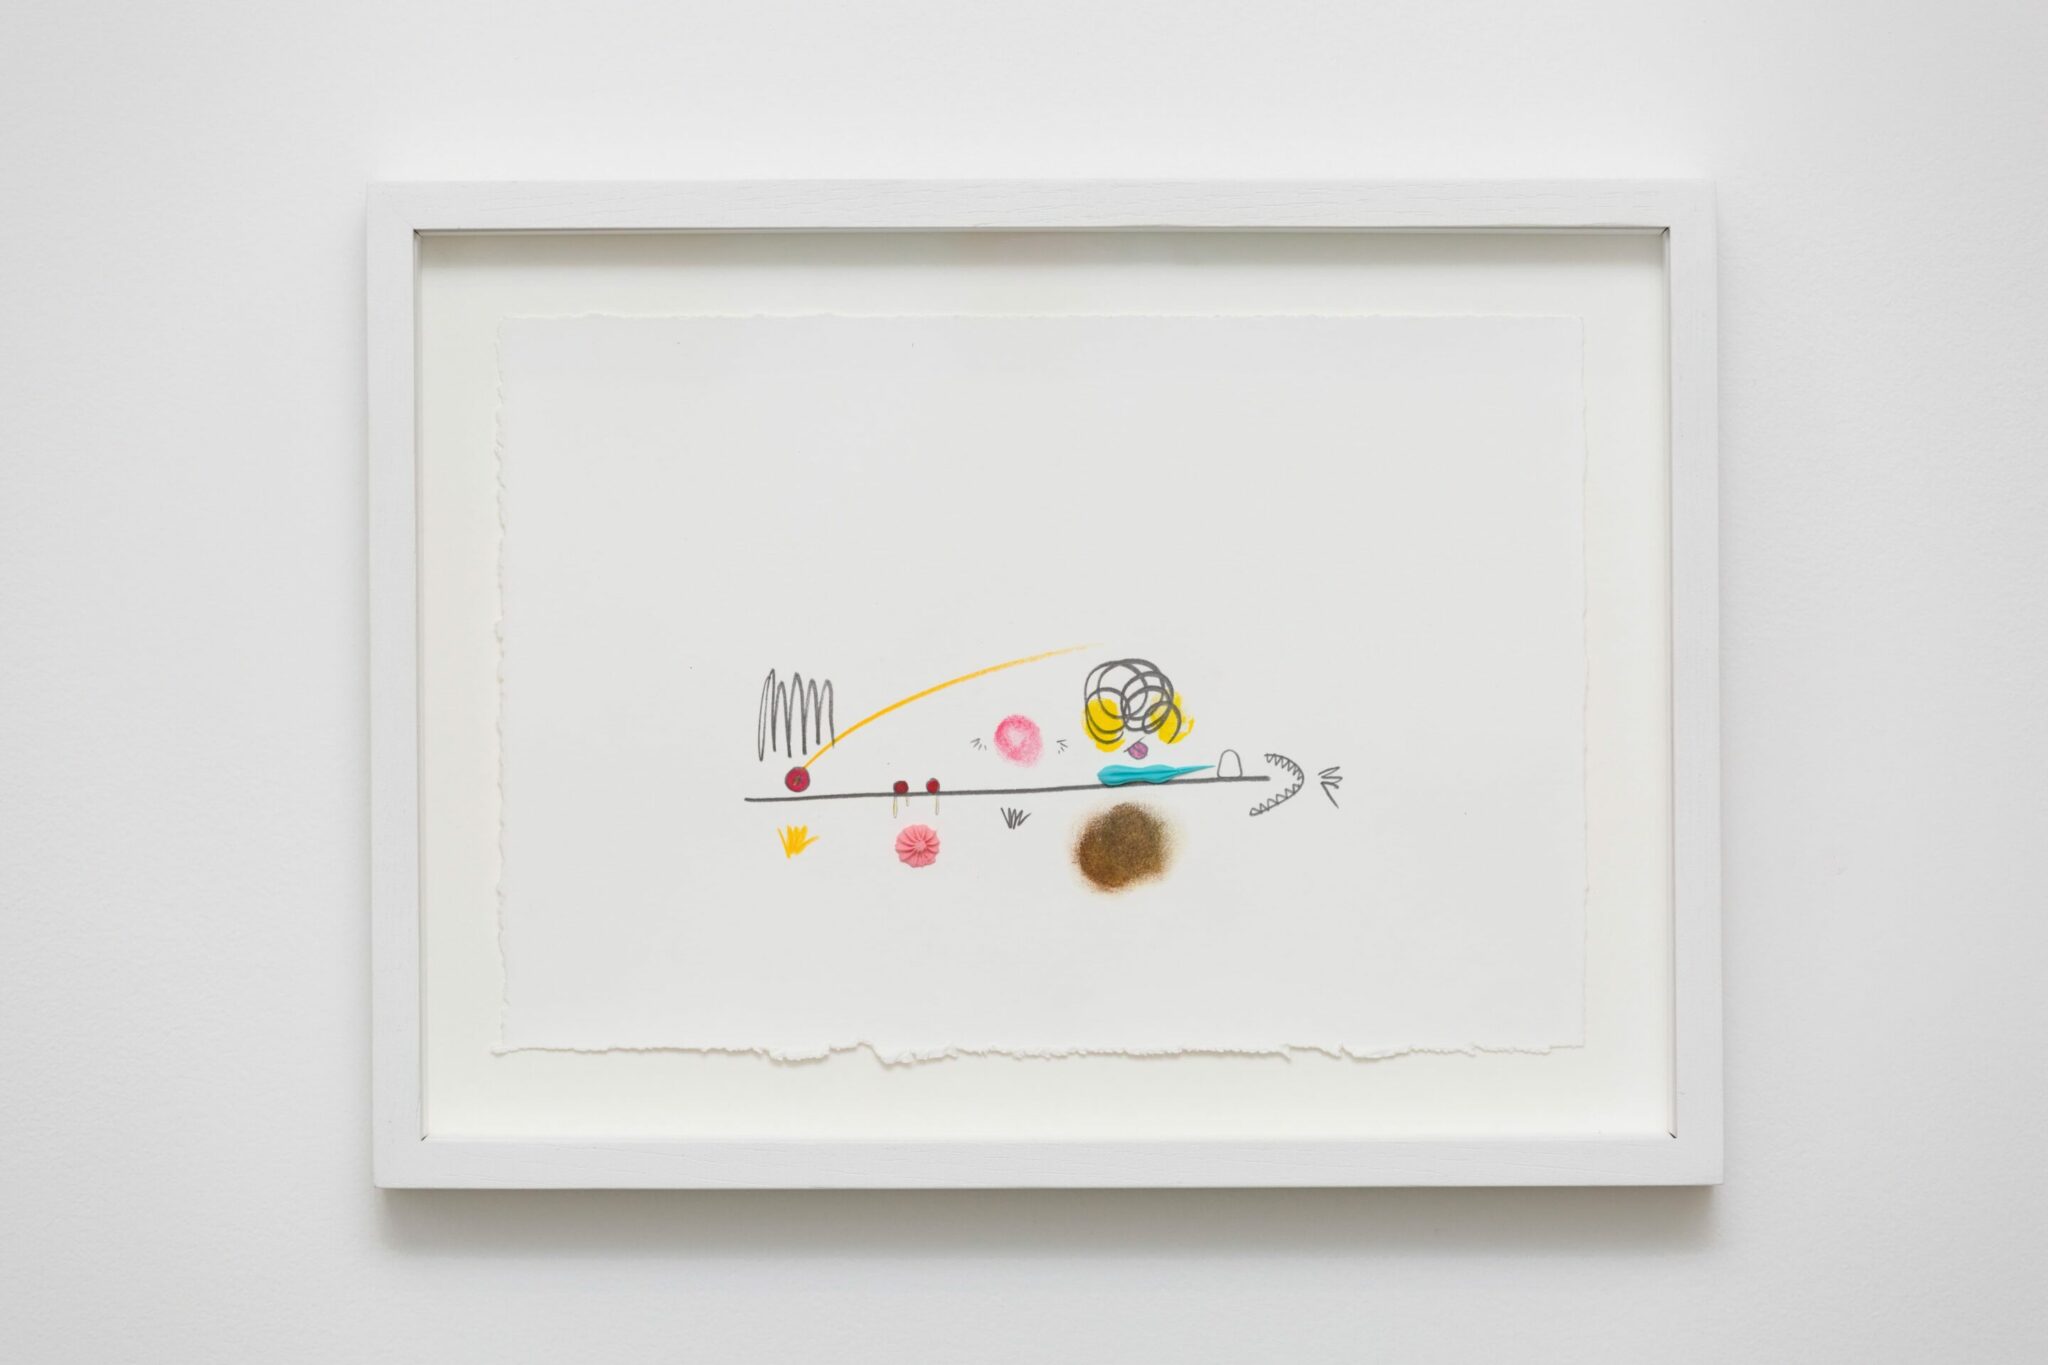 Mika Rottenberg, MRLA036, 2020. Graphite et crayon de couleur sur papier 19,2 x 28,4 cm. Achat à la Galerie Laurent Godin. Collection FRAC Bourgogne. ©DR